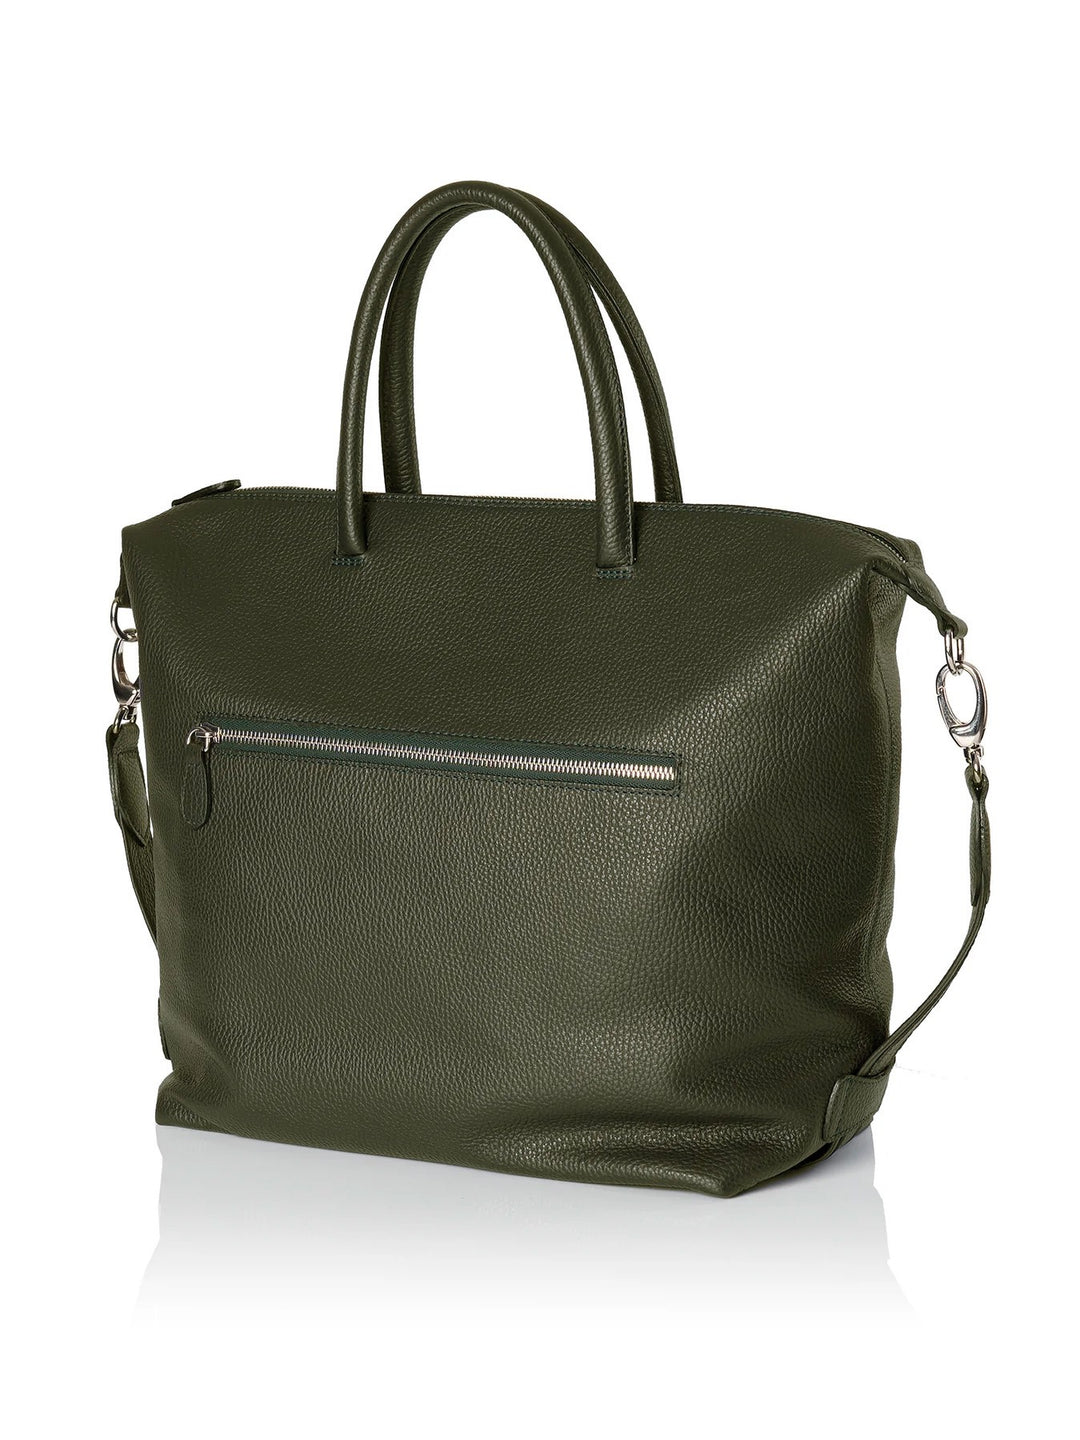 Frontansicht Damenhandtasche - Lamica Schultertasche, grün